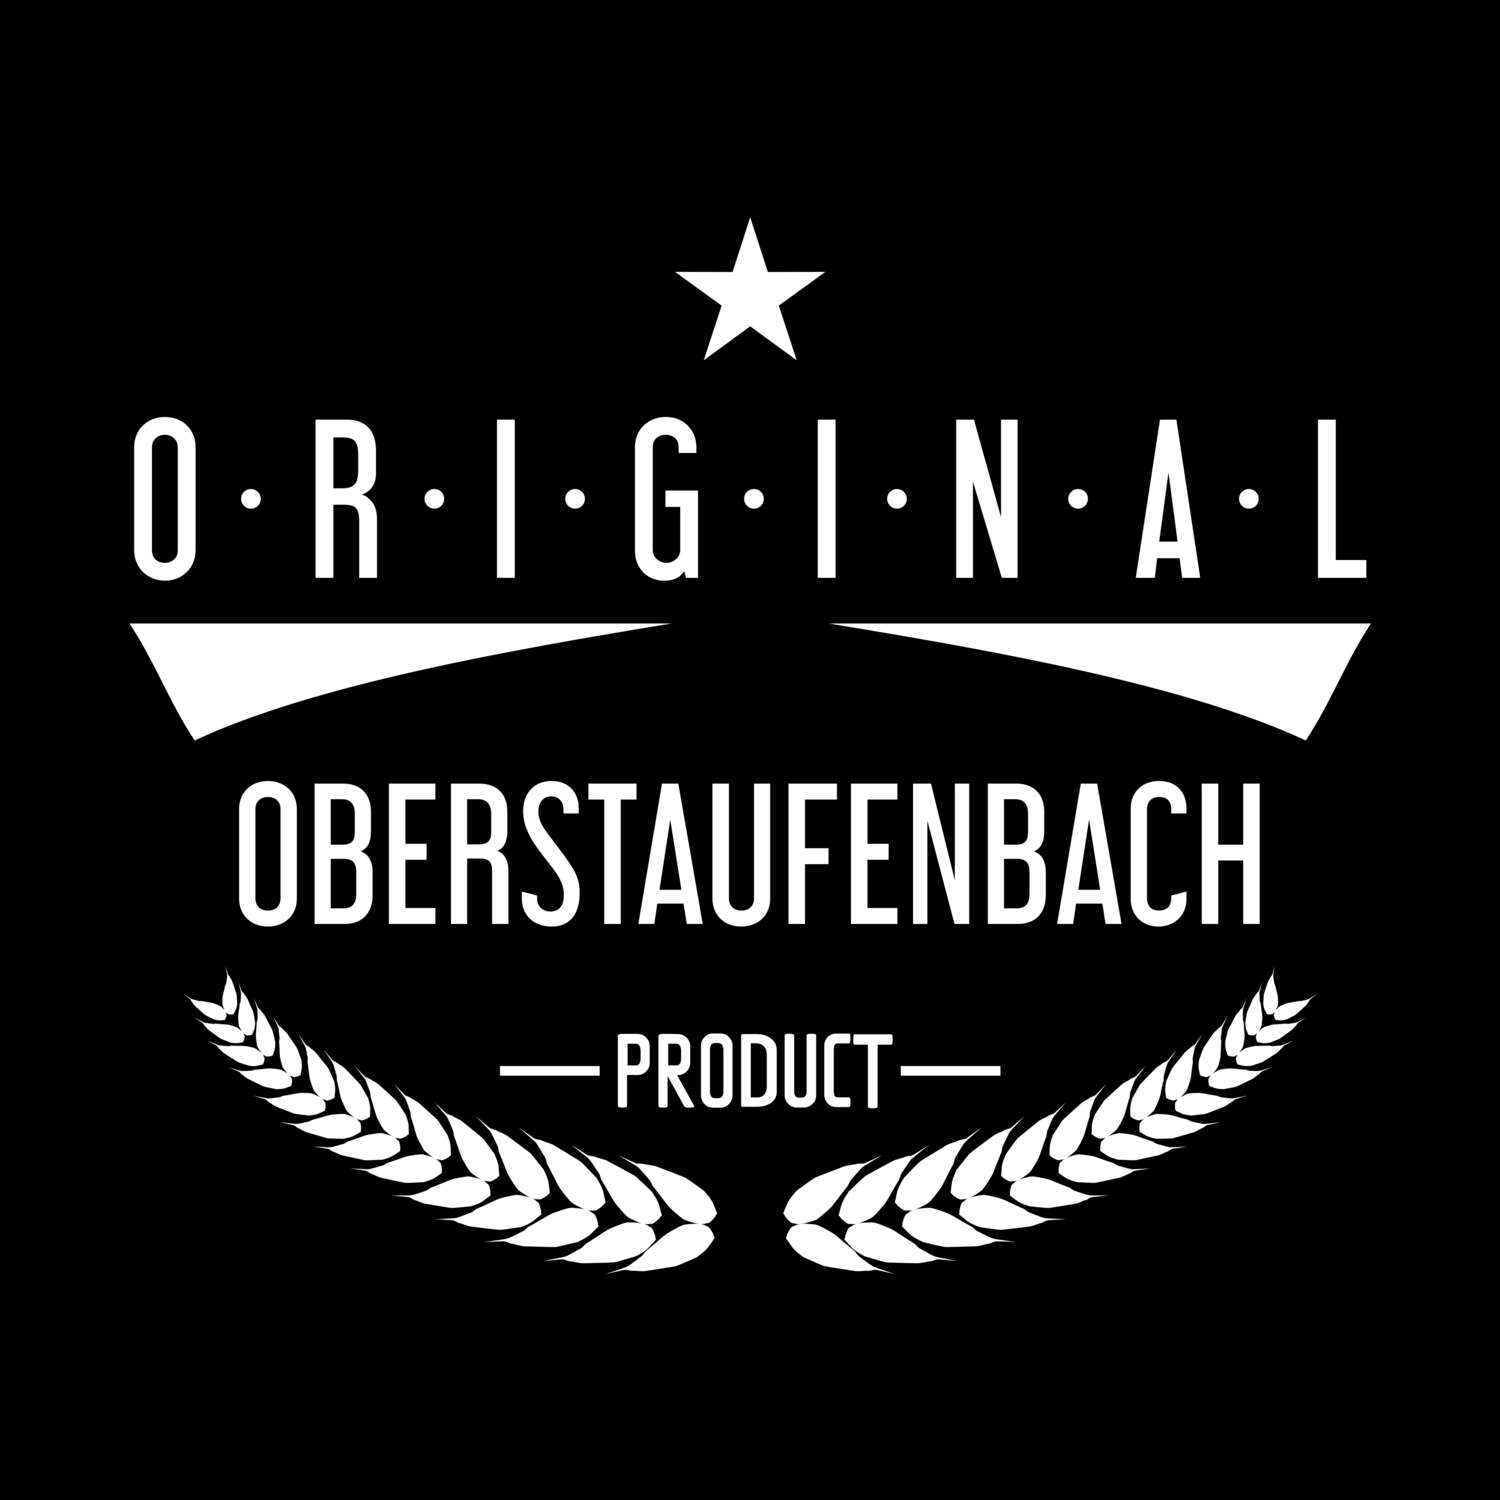 Oberstaufenbach T-Shirt »Original Product«